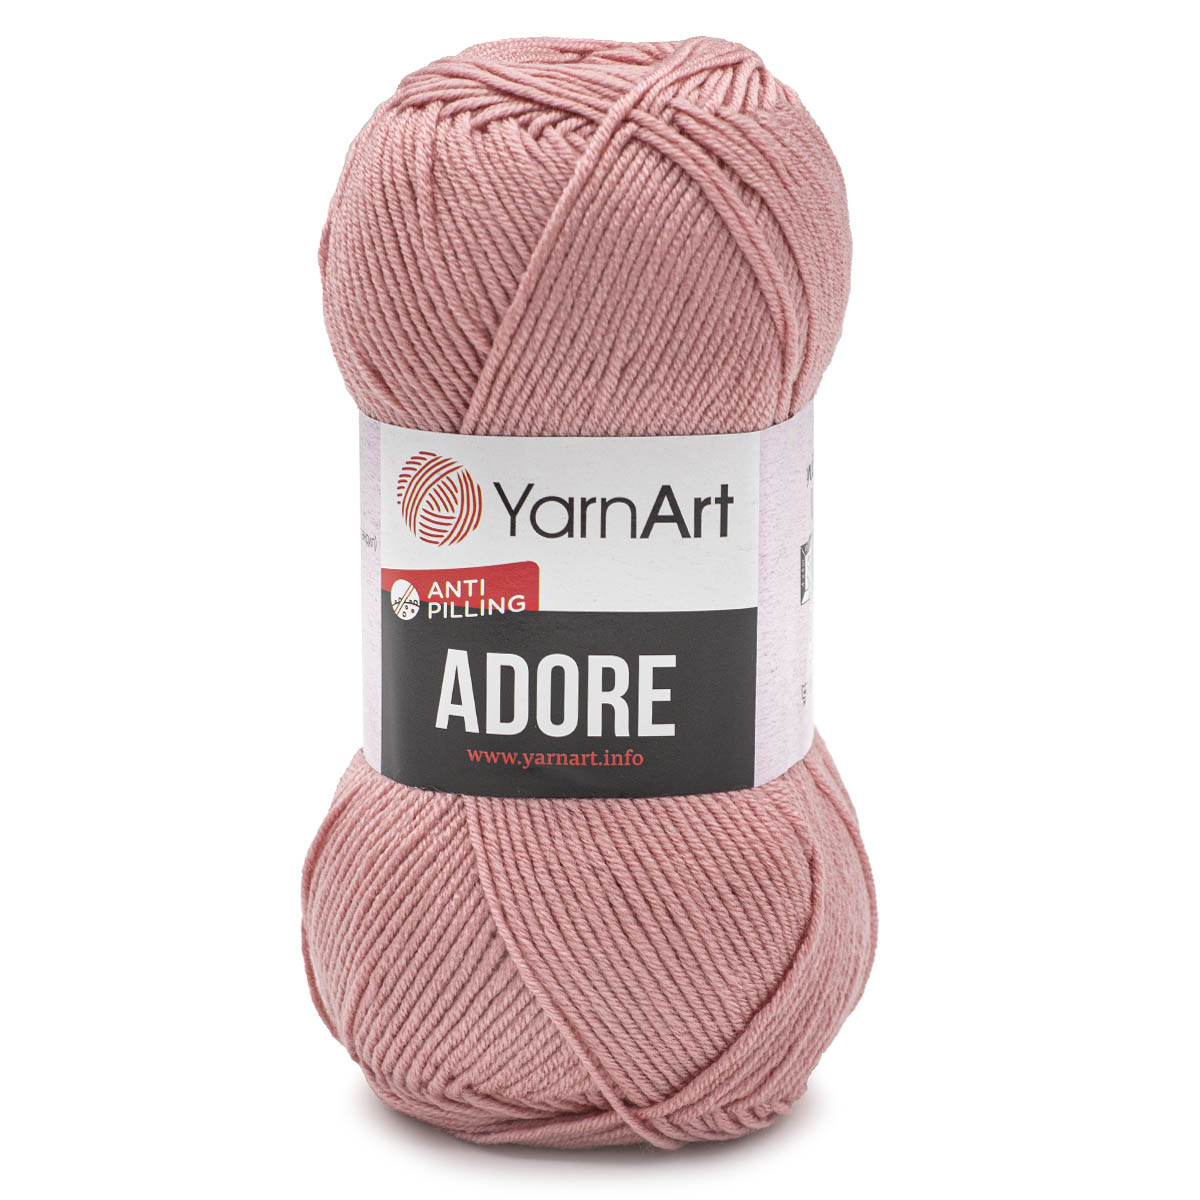 Пряжа для вязания YarnArt Adore 100 гр 280 м акрил с эффектом анти-пиллинга 5 мотков 365 розовый - фото 5